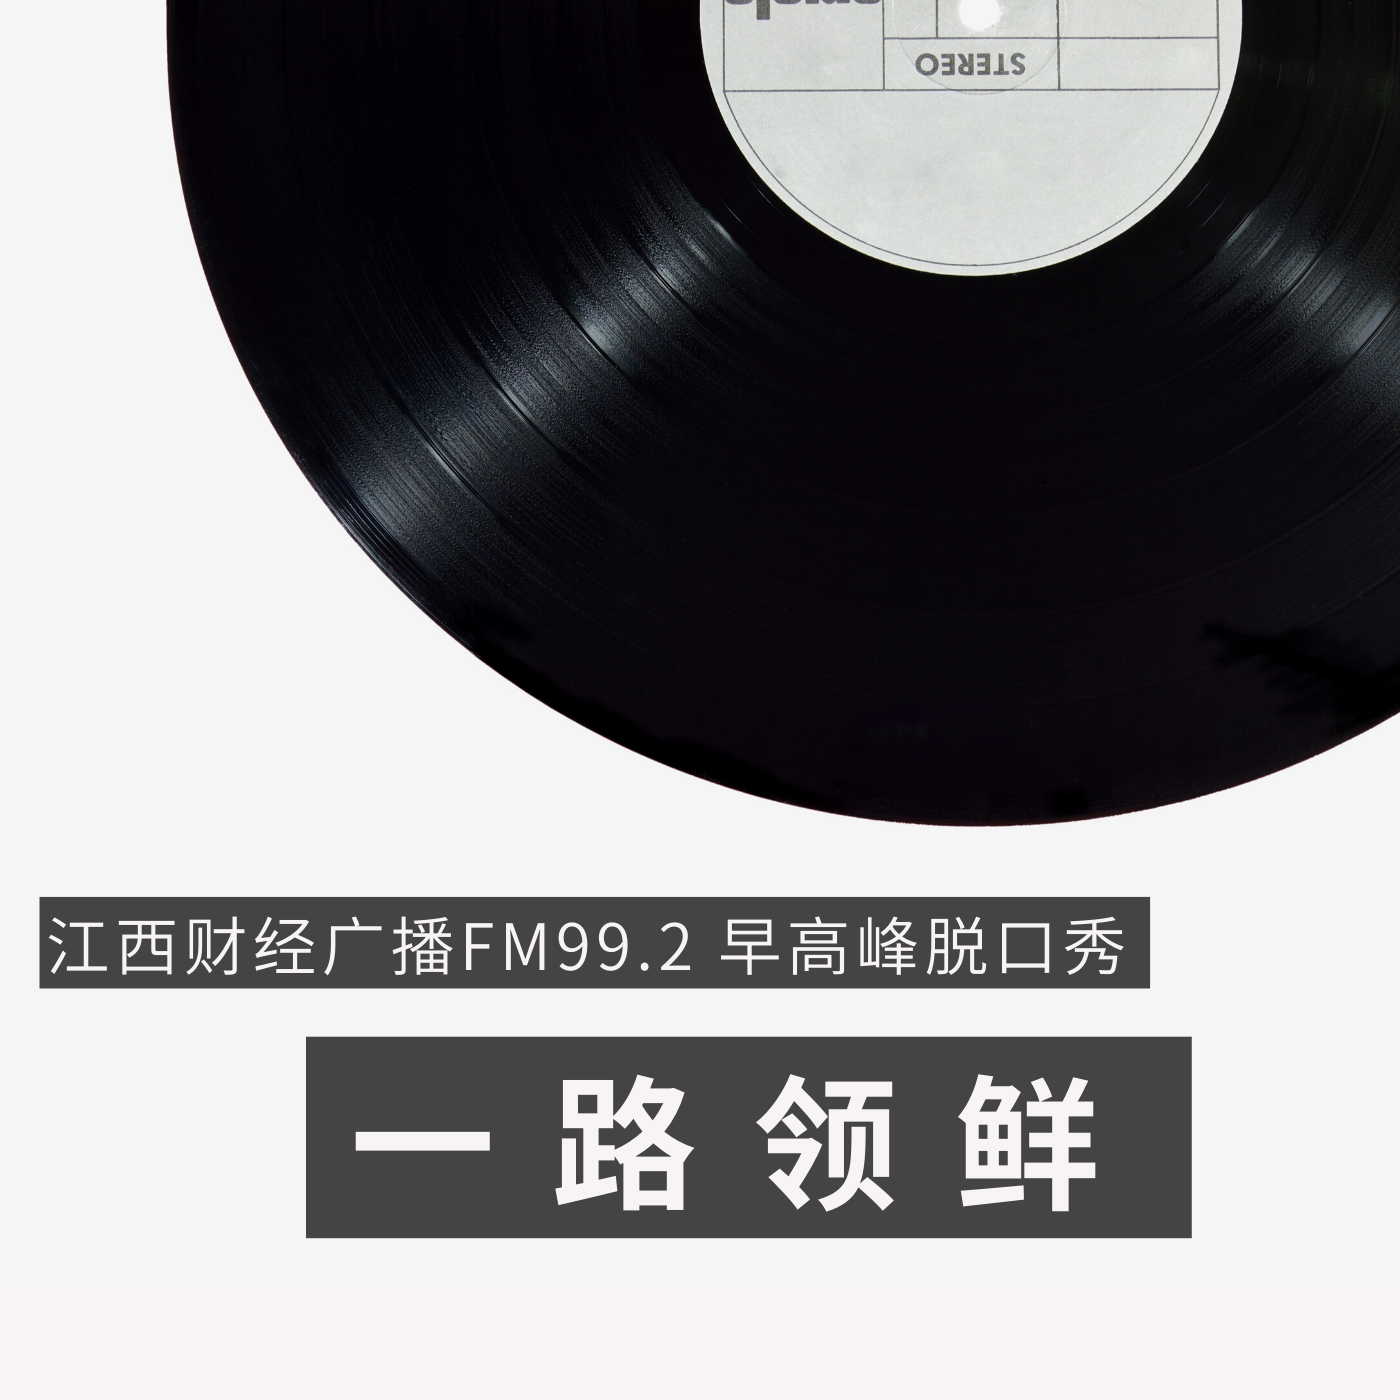 江西财经广播FM99.2早高峰脱口秀